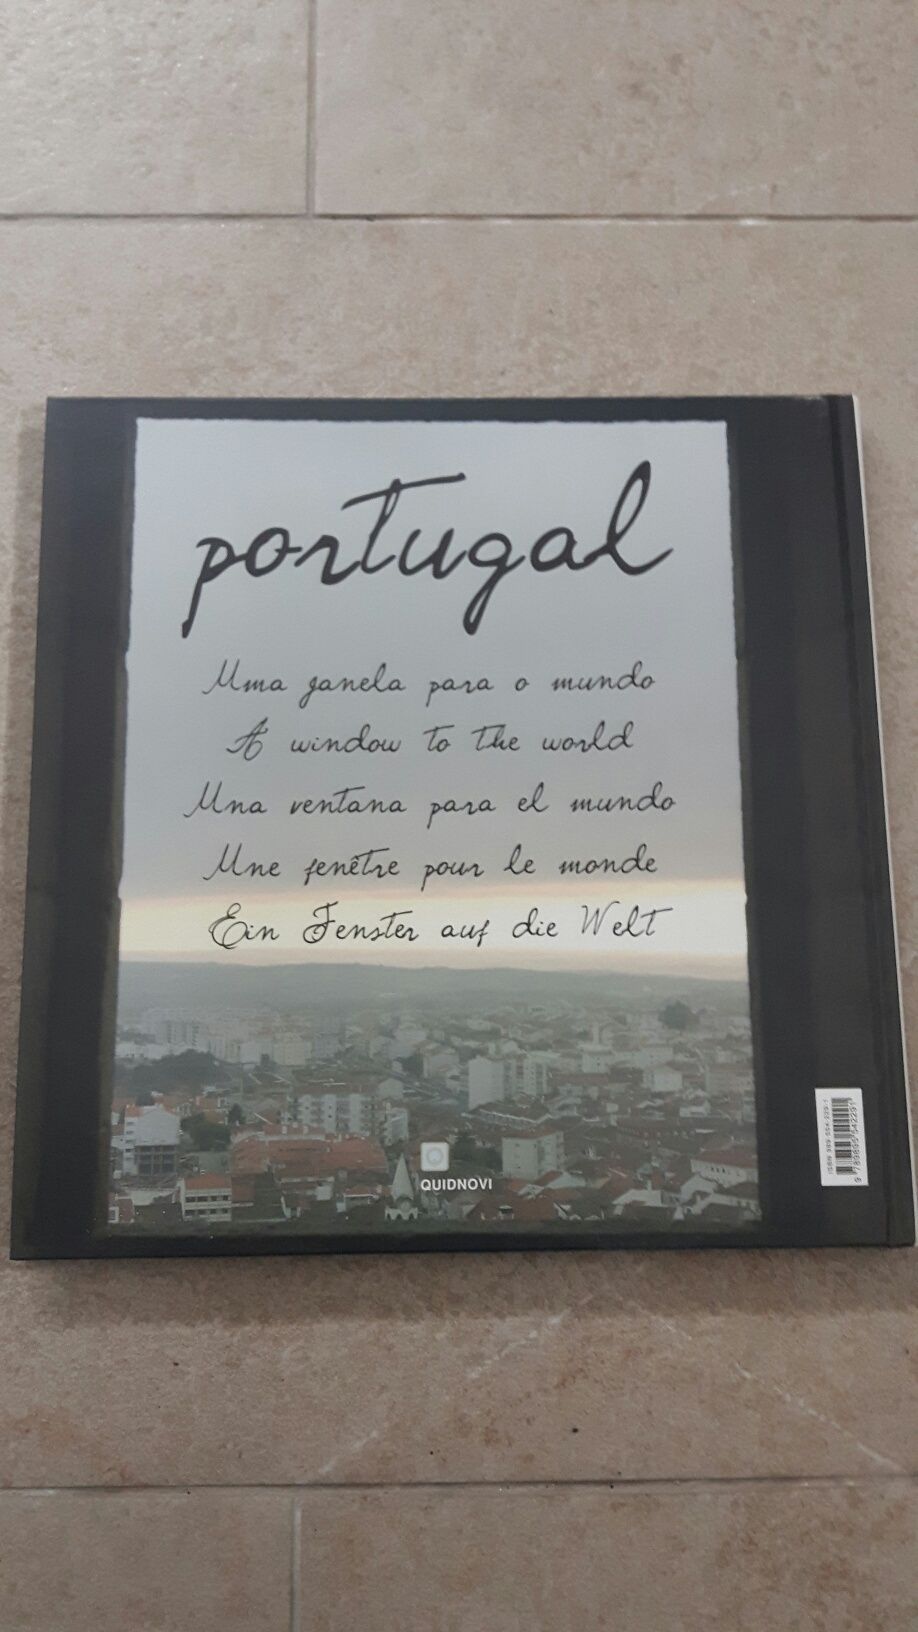 Livro Portugal - Uma Janela para o mundo